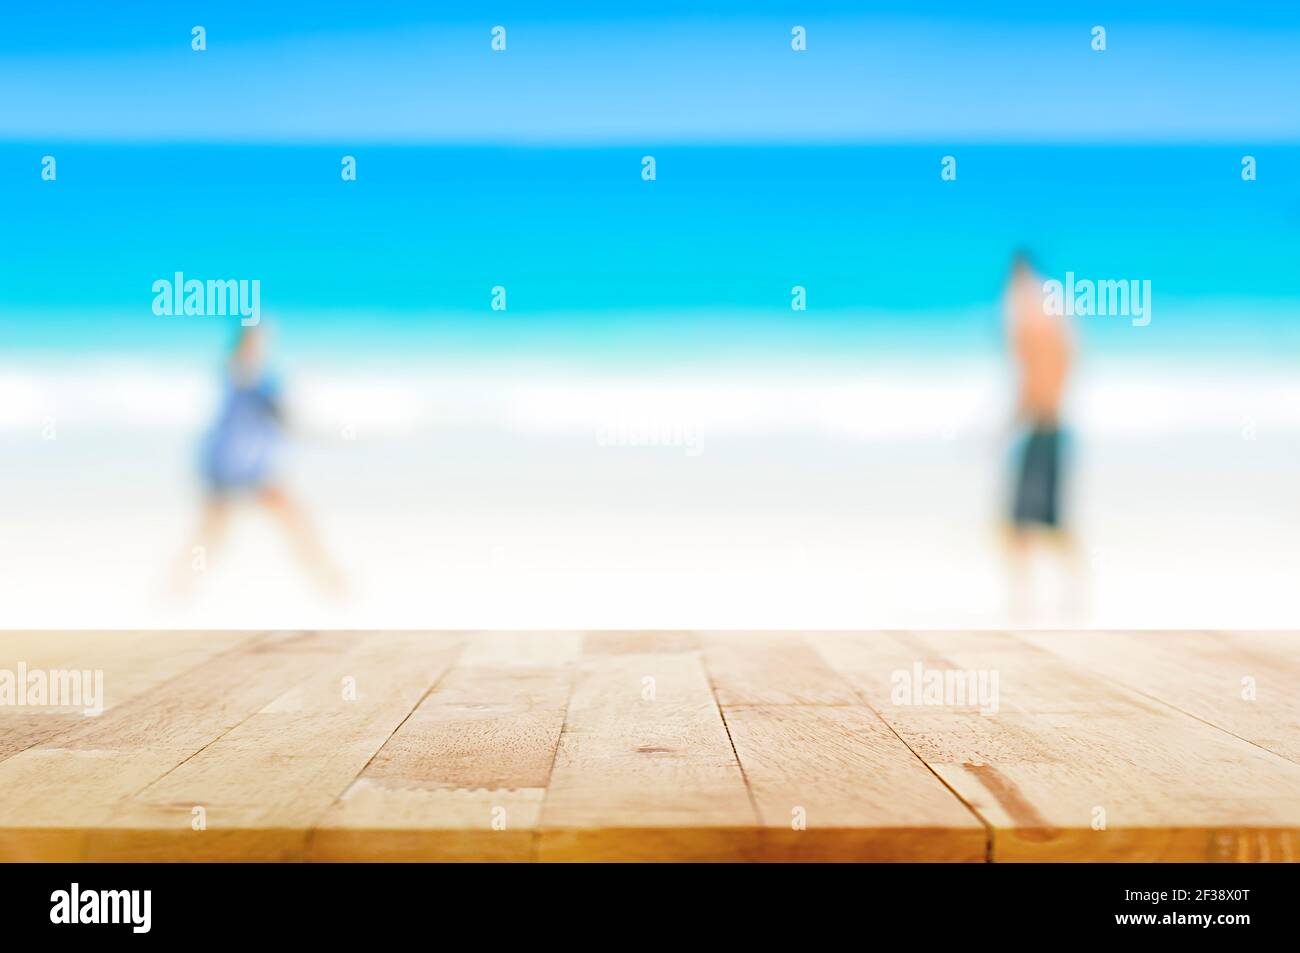 Mesa de madera sobre fondo borroso de dos personas jugando en la playa - se puede utilizar para mostrar o. montaje de sus productos Foto de stock